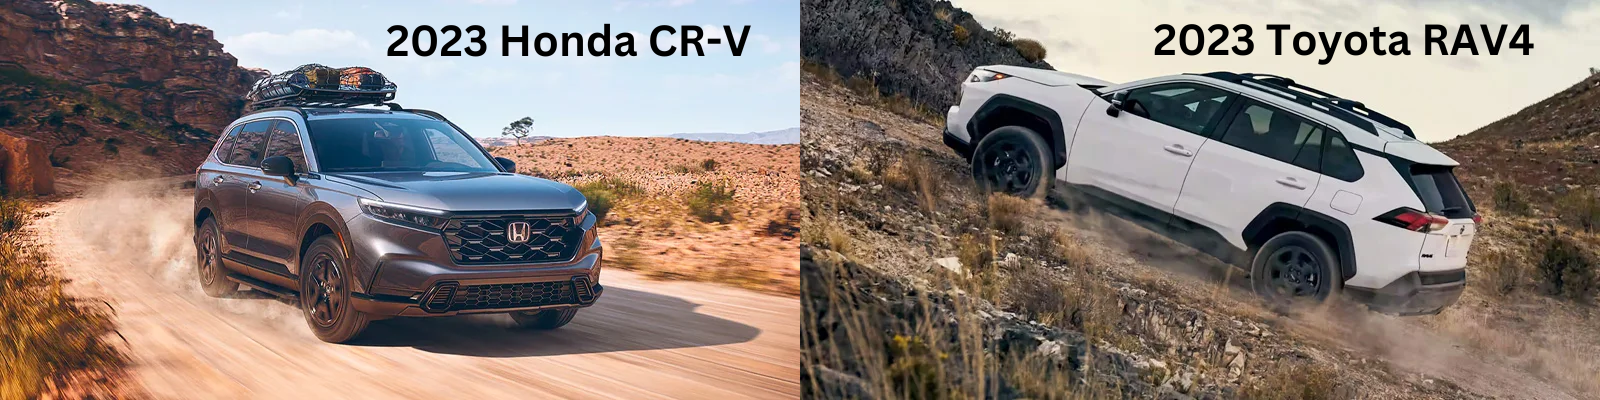 2023 Honda CR-V vs 2023 Toyota RAV4 in Columbus, OH